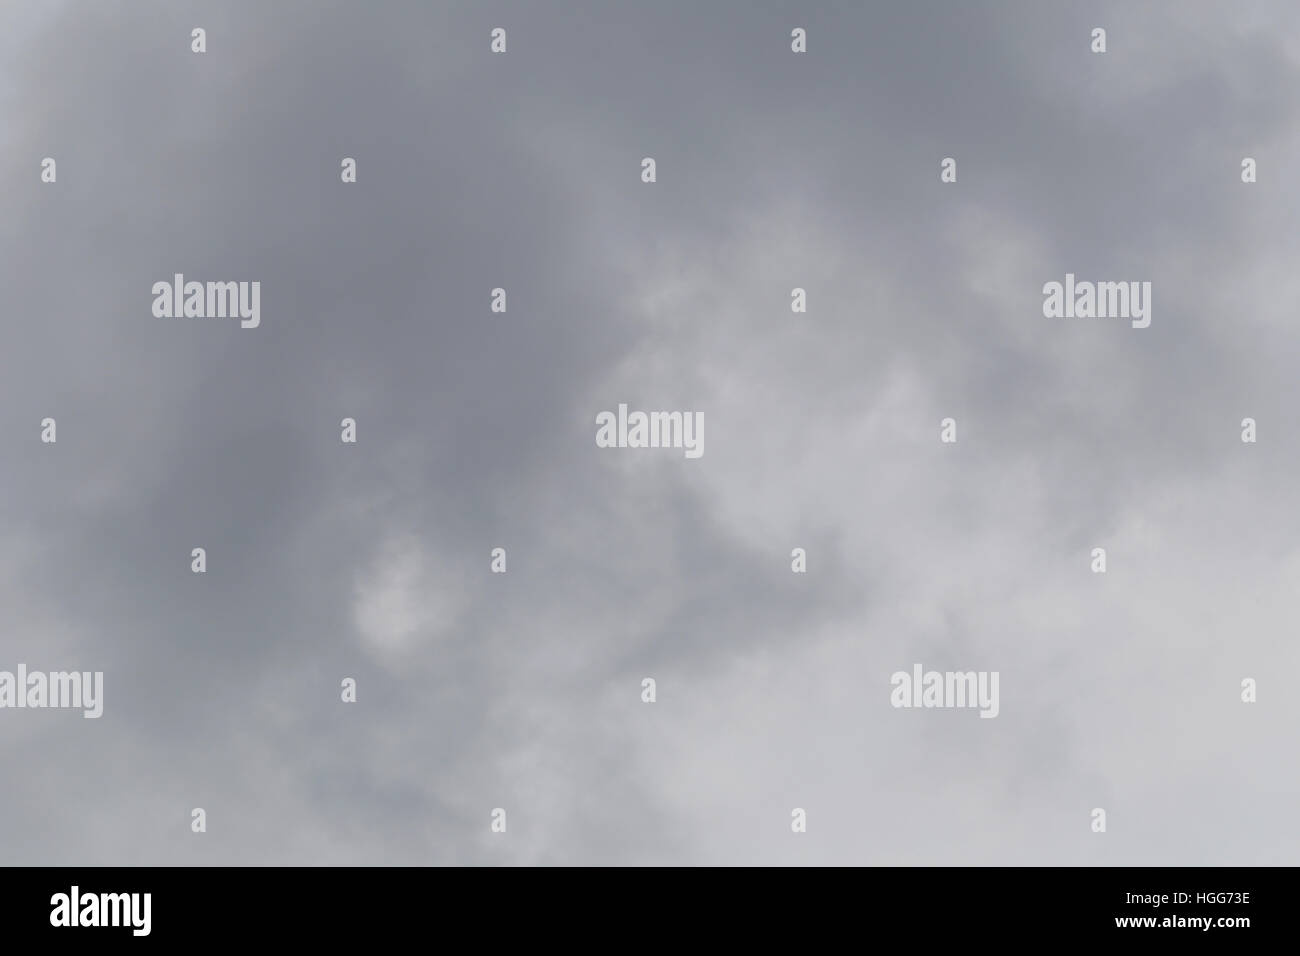 Des nuages de pluie qui se forment dans le ciel dans le concept des changements climatiques,mauvais temps dans la journée. Banque D'Images